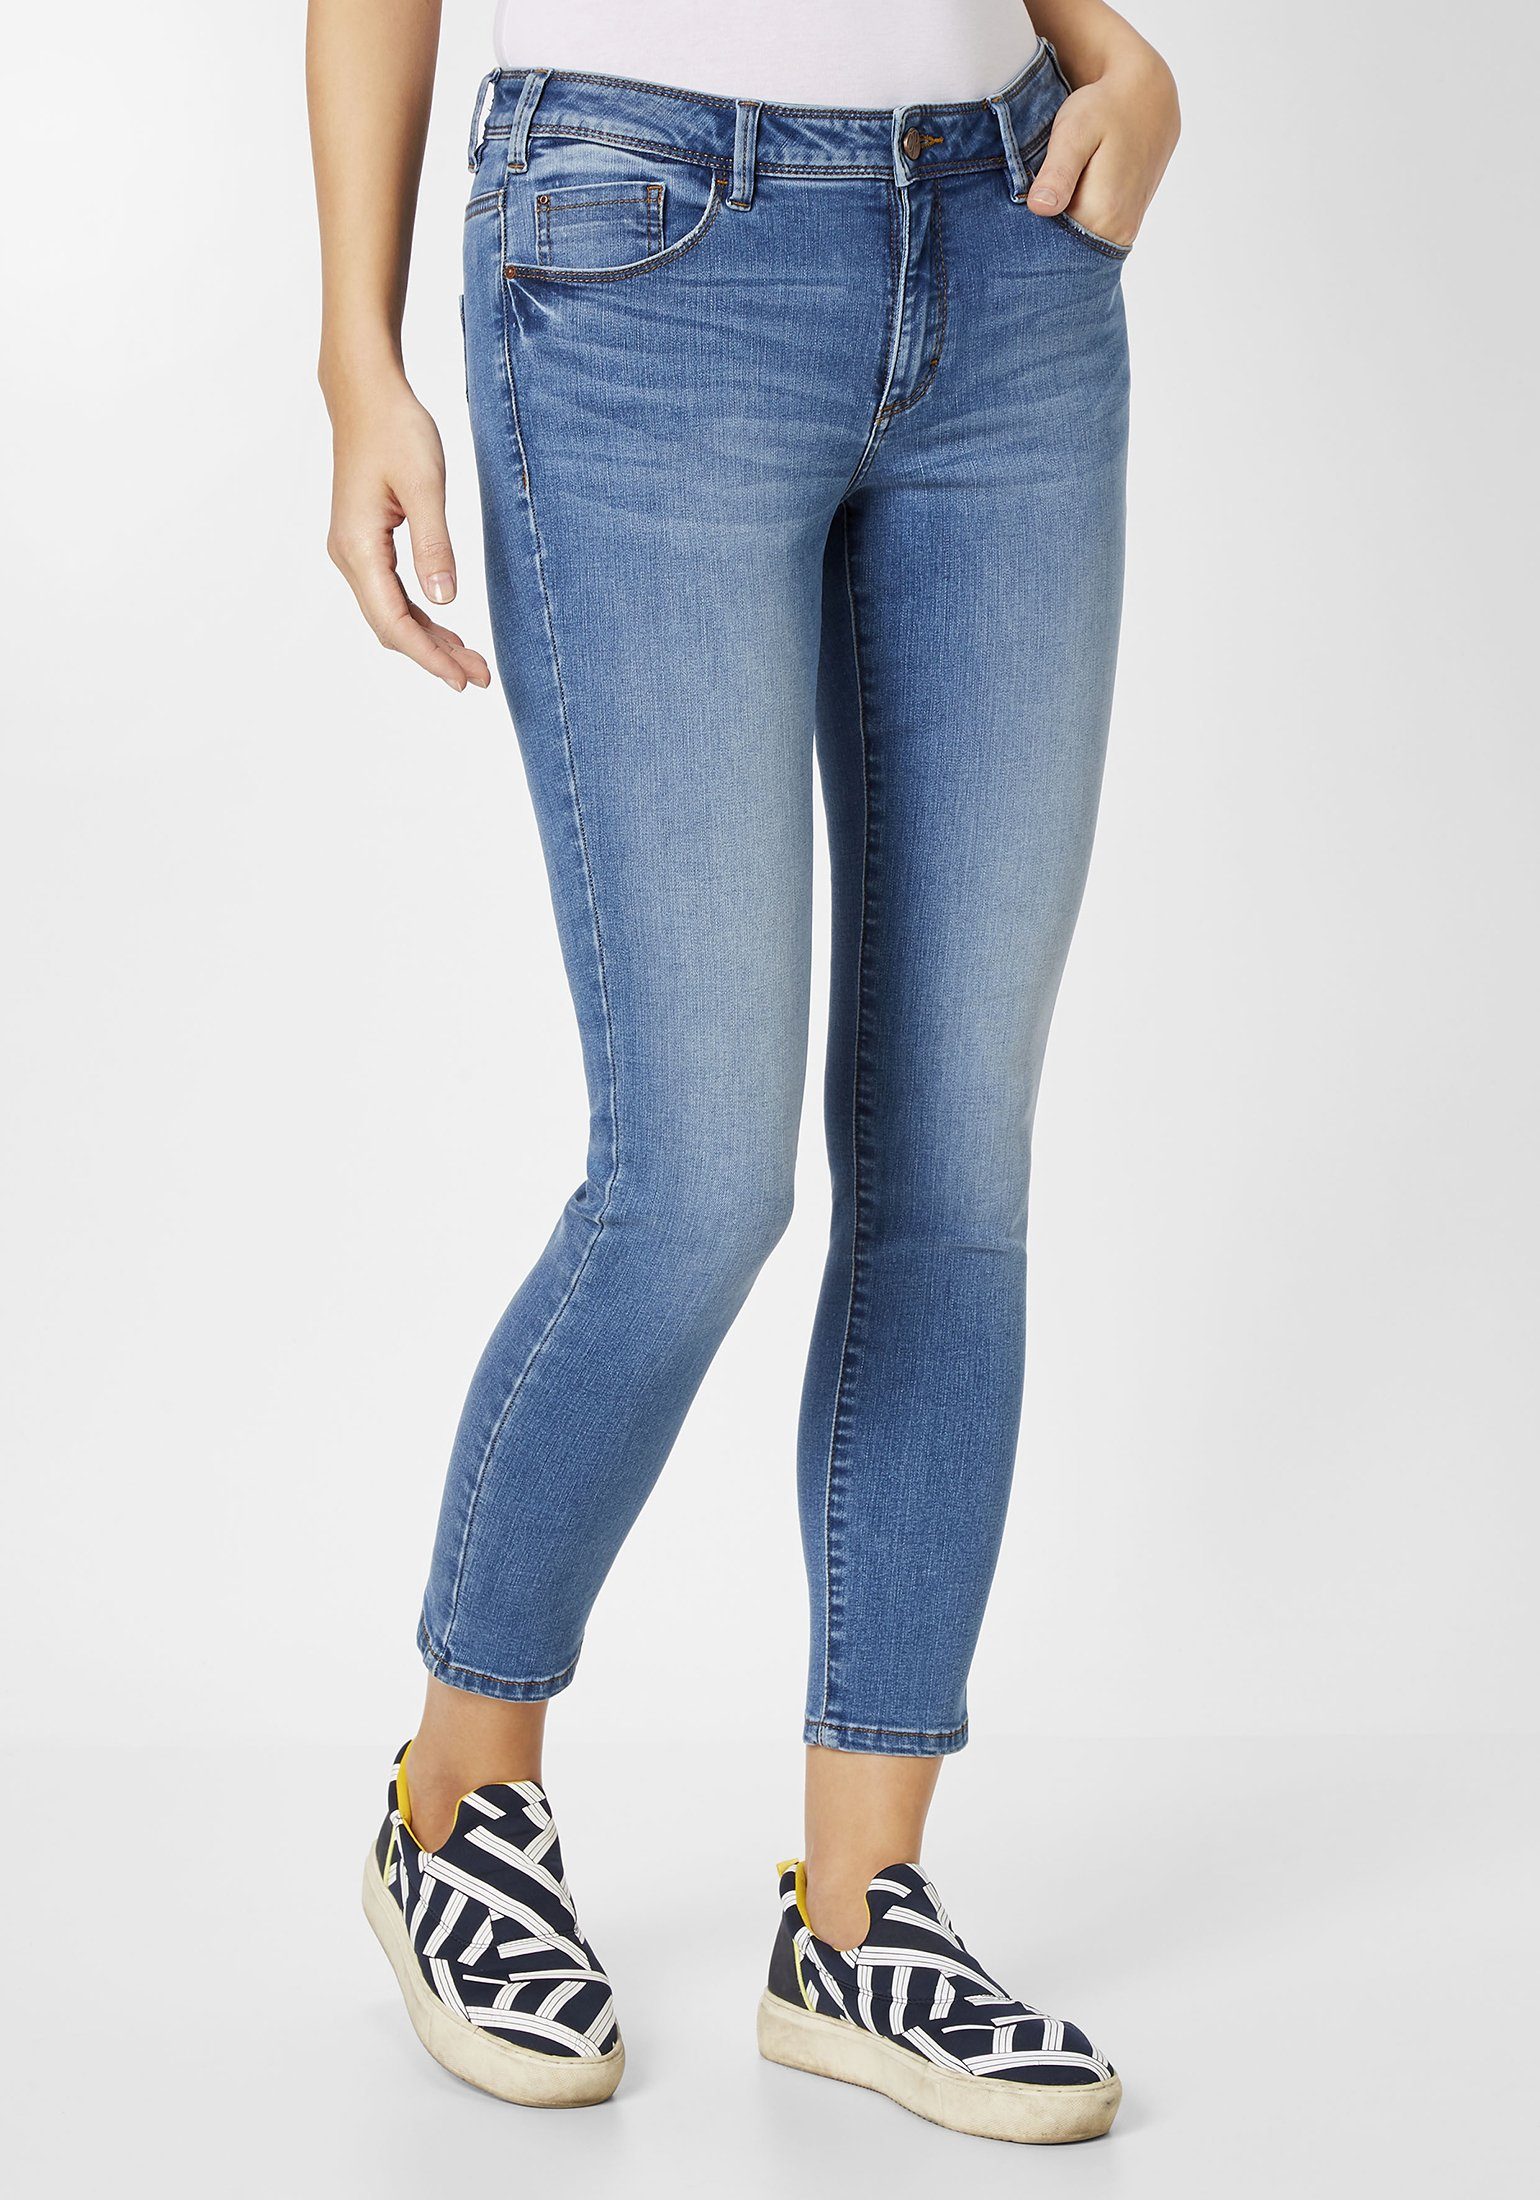 Damen Skinny Jeans Hose mit Zip hinten 